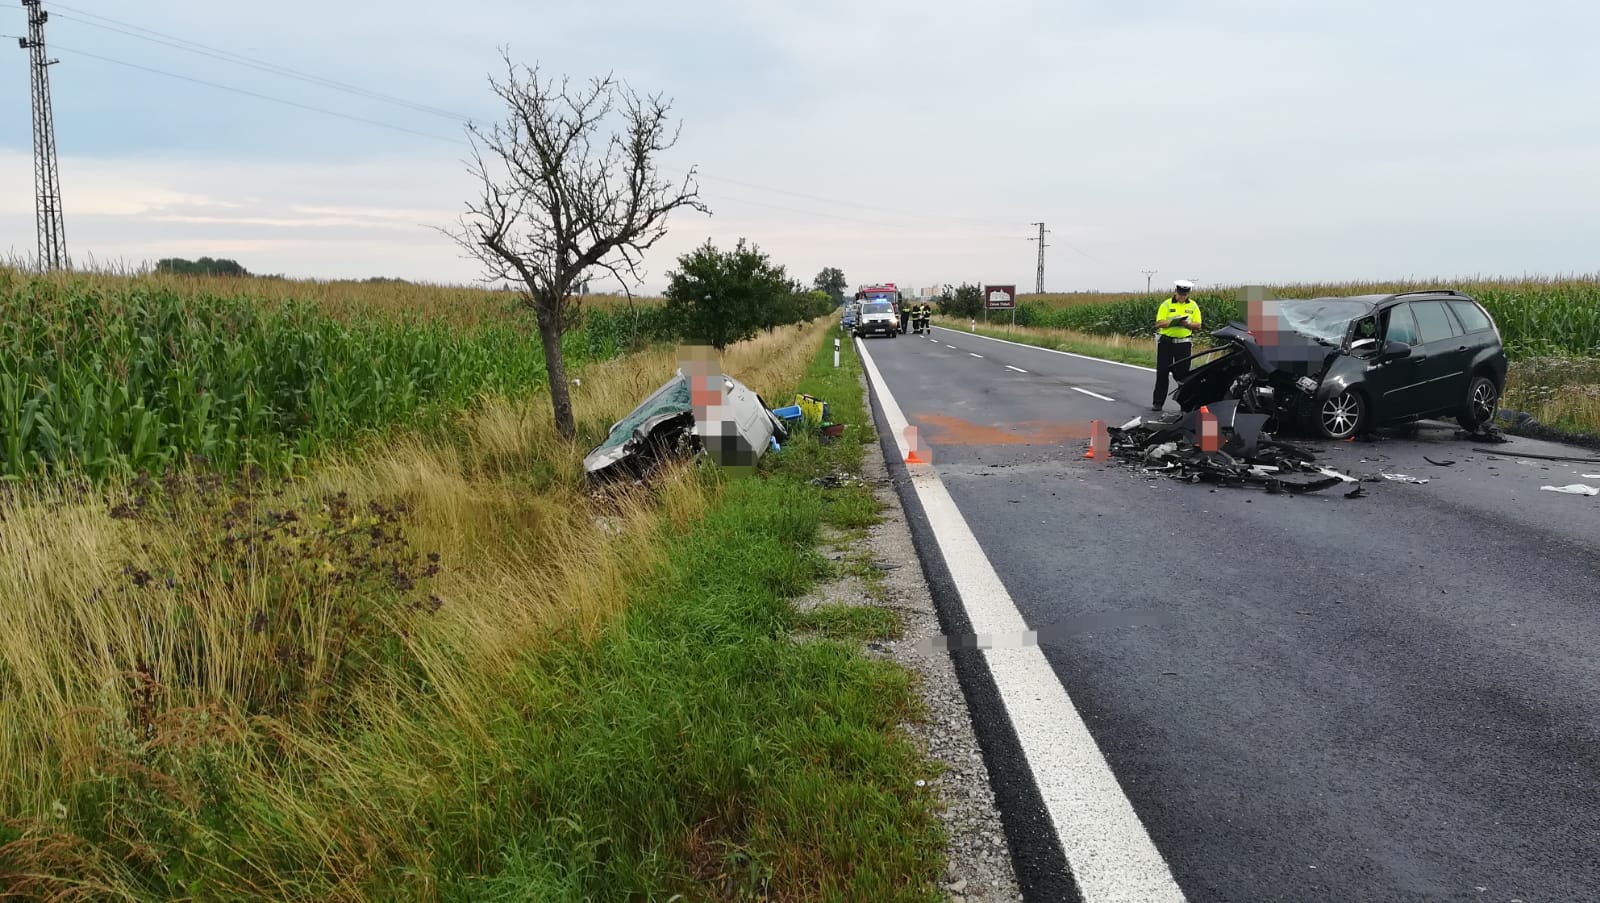 Dopravní nehoda 2 OA, Třeboň - 21. 7. 2018 (3).jpg